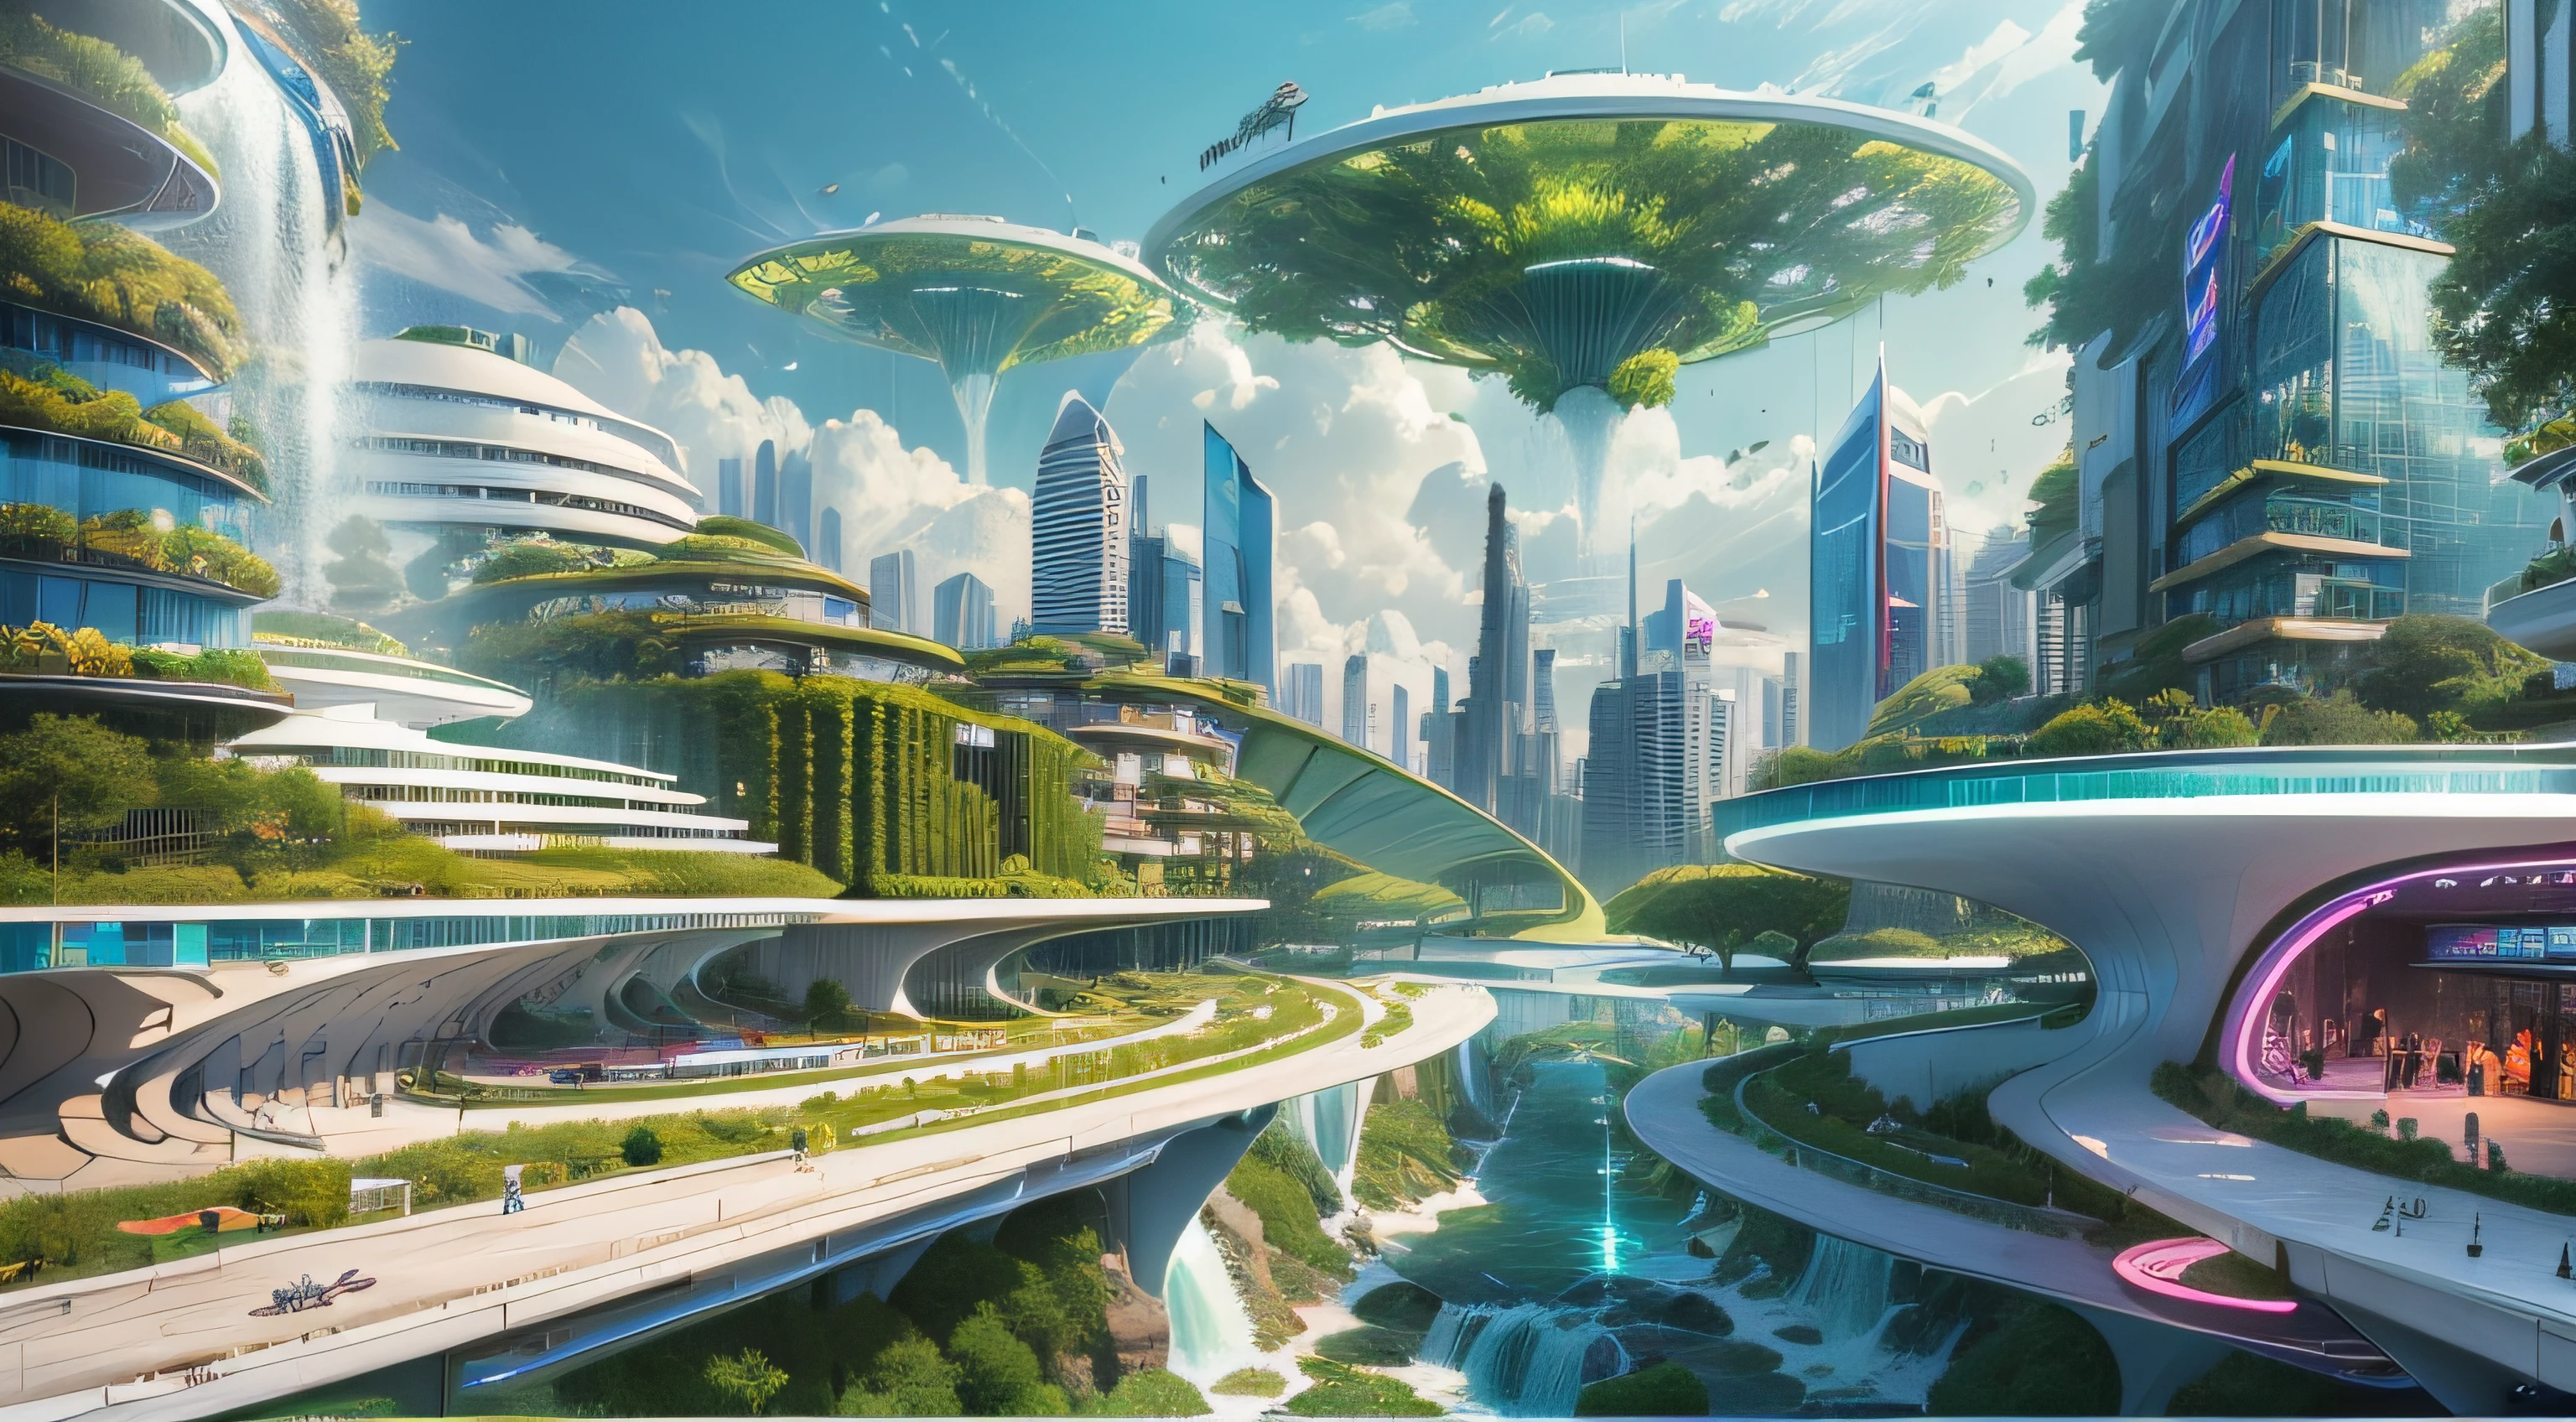 (最好的品質,4k,8K,高解析度,傑作:1.2),超詳細,(實際的,逼真的,照片般逼真:1.37),未來漂浮城市,未来科技,龐大的城市高科技平板平台,飛艇,漂浮在空中,未來城市,周圍有小飛艇,高科技半球形平台,彩灯,先進的架構,現代建築,摩天大樓,存取雲,風景優美,俯瞰城市,令人印象深刻的設計,與自然無縫融合,充滿活力和活力的氛圍,未來交通系統,暫停停車,透明路徑,郁郁葱葱的绿色植物,空中花園,瀑布,壯麗的天際線,水面上的倒影,波光粼粼的河流,建築創新,未來派的摩天大樓,透明圓頂,建築物的形狀很不尋常,高架走道,令人印象深刻的天際線,发光的灯光,未来科技,簡約設計,風景名勝區,全景,穿雲塔,鮮豔的色彩,史詩般的日出,史詩般的日落,炫目的燈光顯示,神奇的氛围,未來城市,城市烏托邦,奢華生活方式,創新能源,永續發展,智慧城市技術,先進的基礎設施,宁静的气氛,自然與科技和諧相處,令人驚嘆的城市景觀,前所未有的都市規劃,建築與自然無縫銜接,高科技大都市,尖端的工程奇蹟,城市生活的未來,富有遠見的建築概念,節能建築,與環境和諧,一座漂浮在雲端的城市,烏托邦夢想成現實,可能性是無止境,最先進的交通網絡,綠色能源融合,創新材料,令人印象深刻的全息顯示,先進的通訊系統,令人驚嘆的鳥瞰圖,安靜祥和的環境,現代主義美學,空灵之美